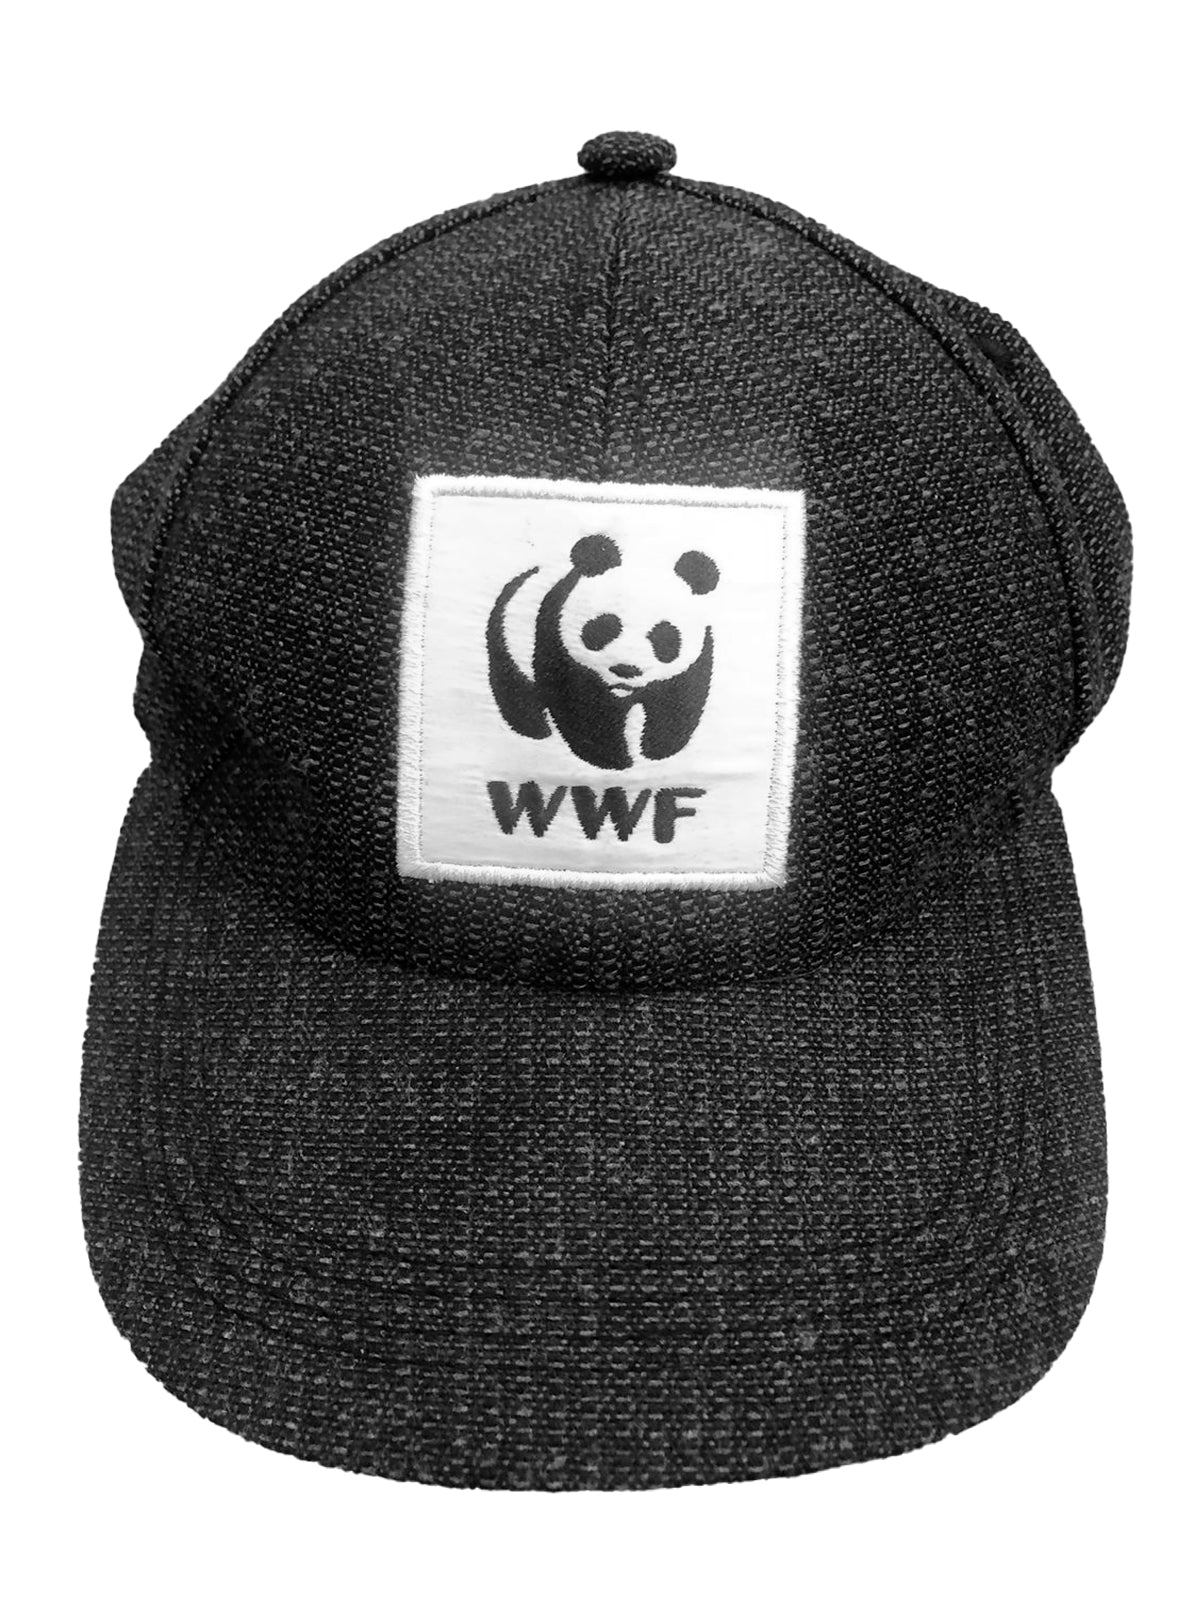 Gorra bordada WWF Colombia